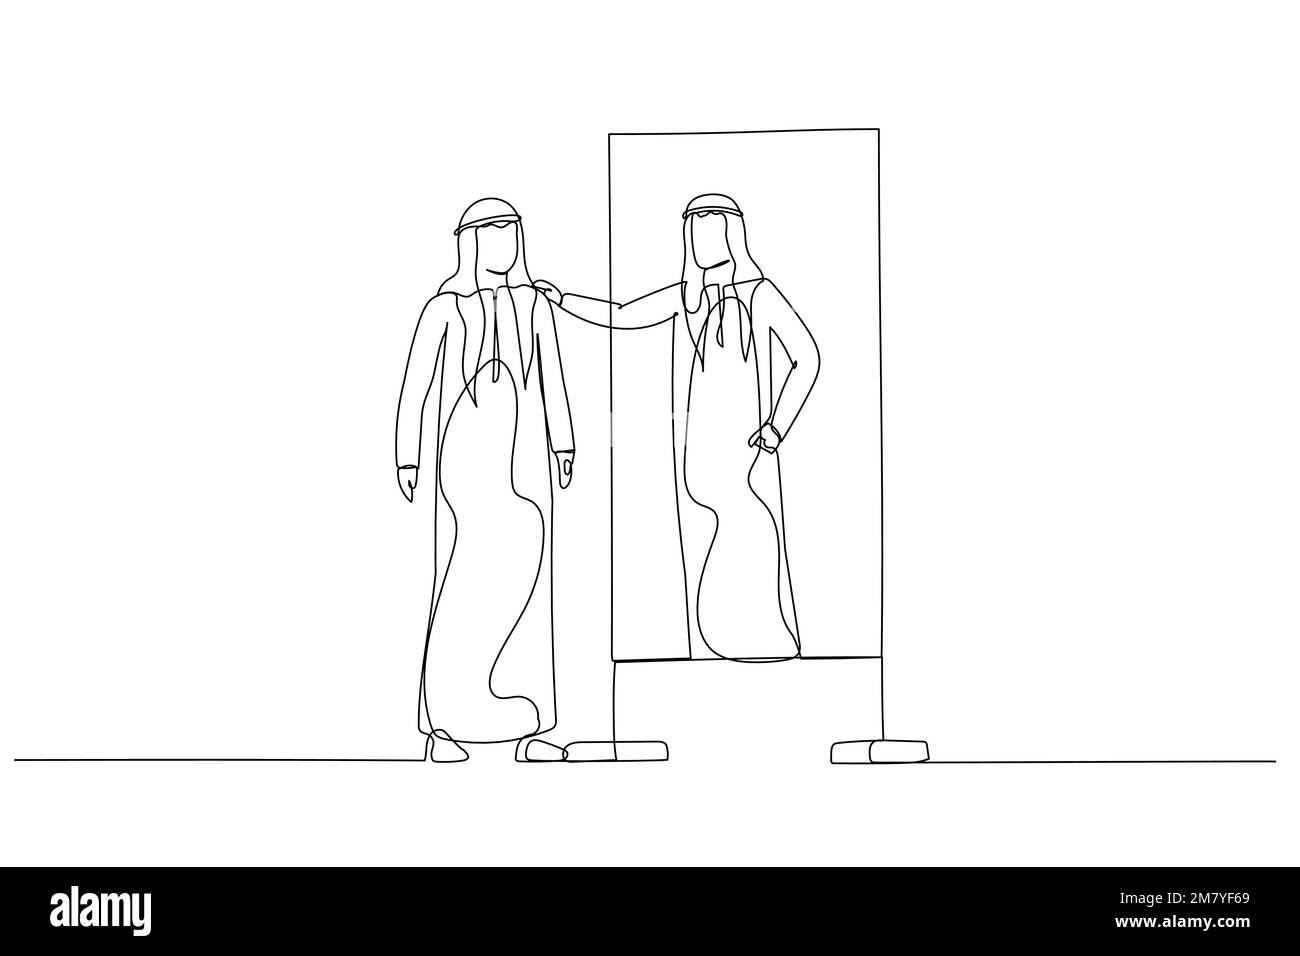 Cartone animato dell'uomo arabo che guarda nello specchio abbracci il concetto di auto-stima cura di sé. Design unico in stile artistico a linea continua Illustrazione Vettoriale